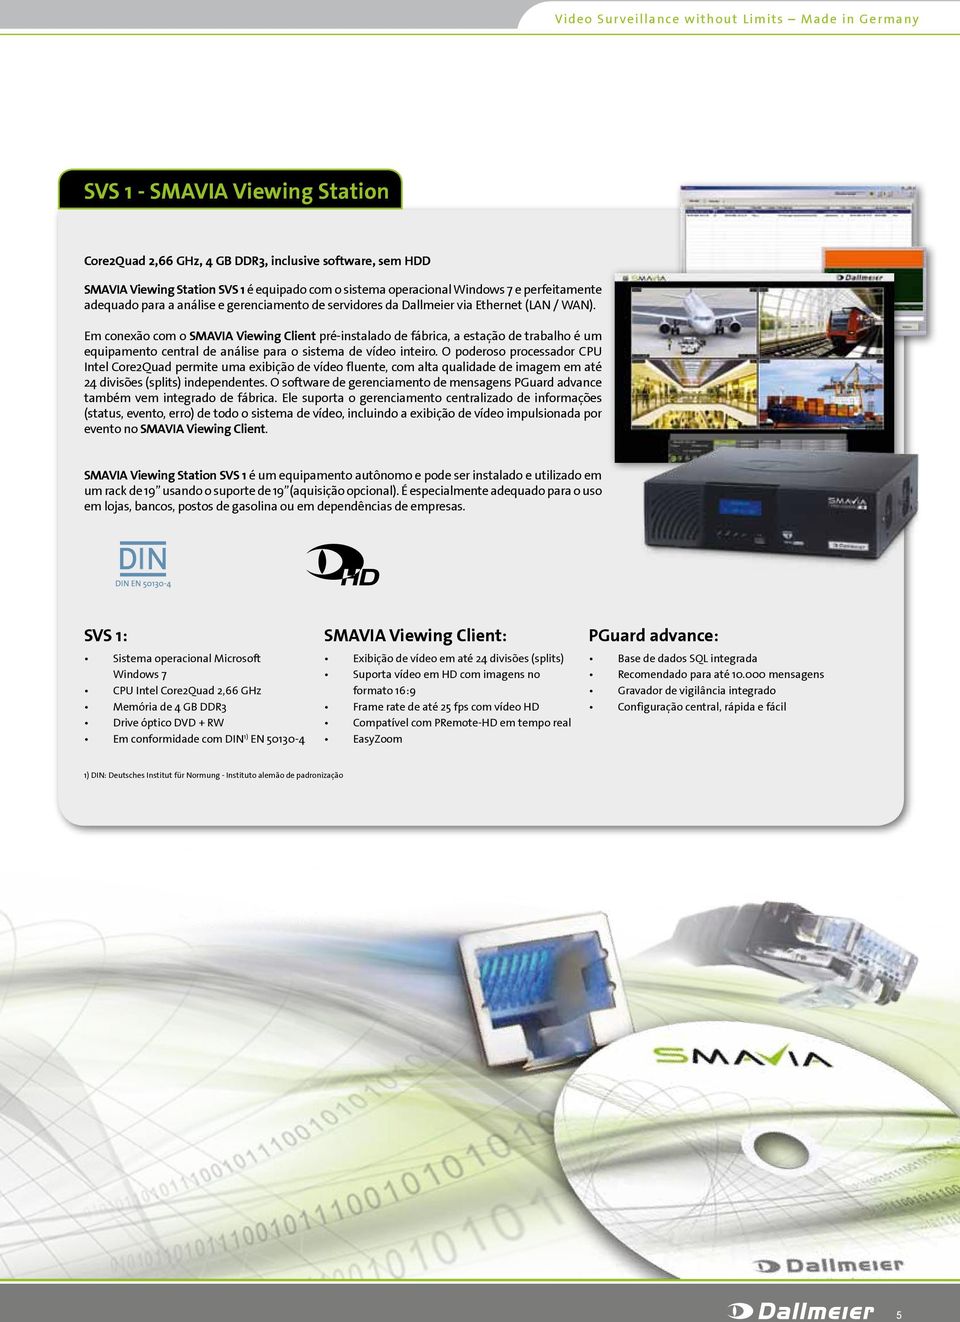 Em conexão com o SMAVIA Viewing Client pré-instalado de fábrica, a estação de trabalho é um equipamento central de análise para o sistema de vídeo inteiro.